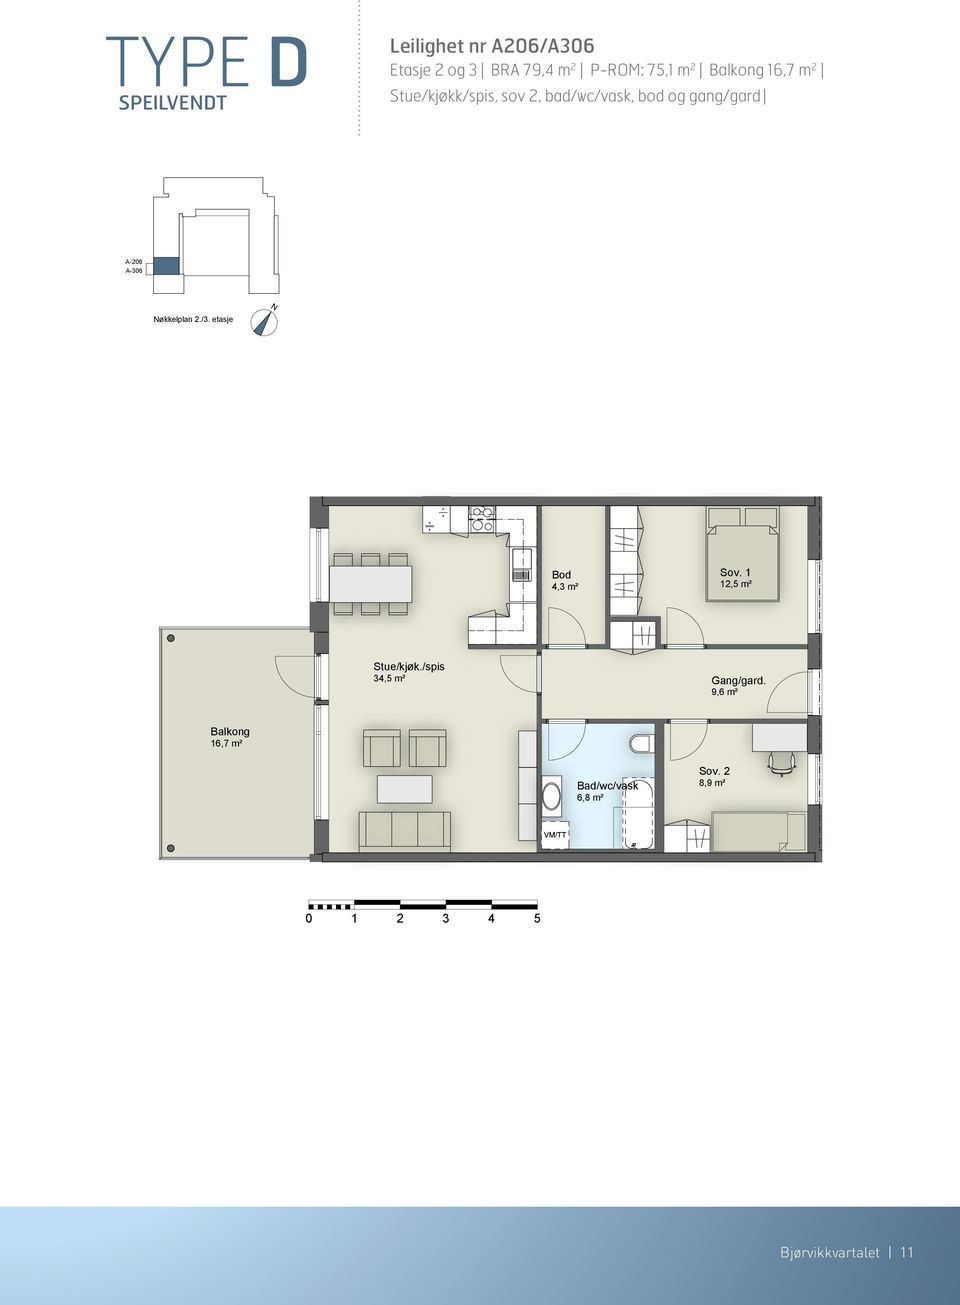 etasje 4,3 m² 12,5 m² Stue/kjøk./spis 34,5 m² 9,6 m² 16,7 m² Bad/wc/vask 6,8 m² Sov.